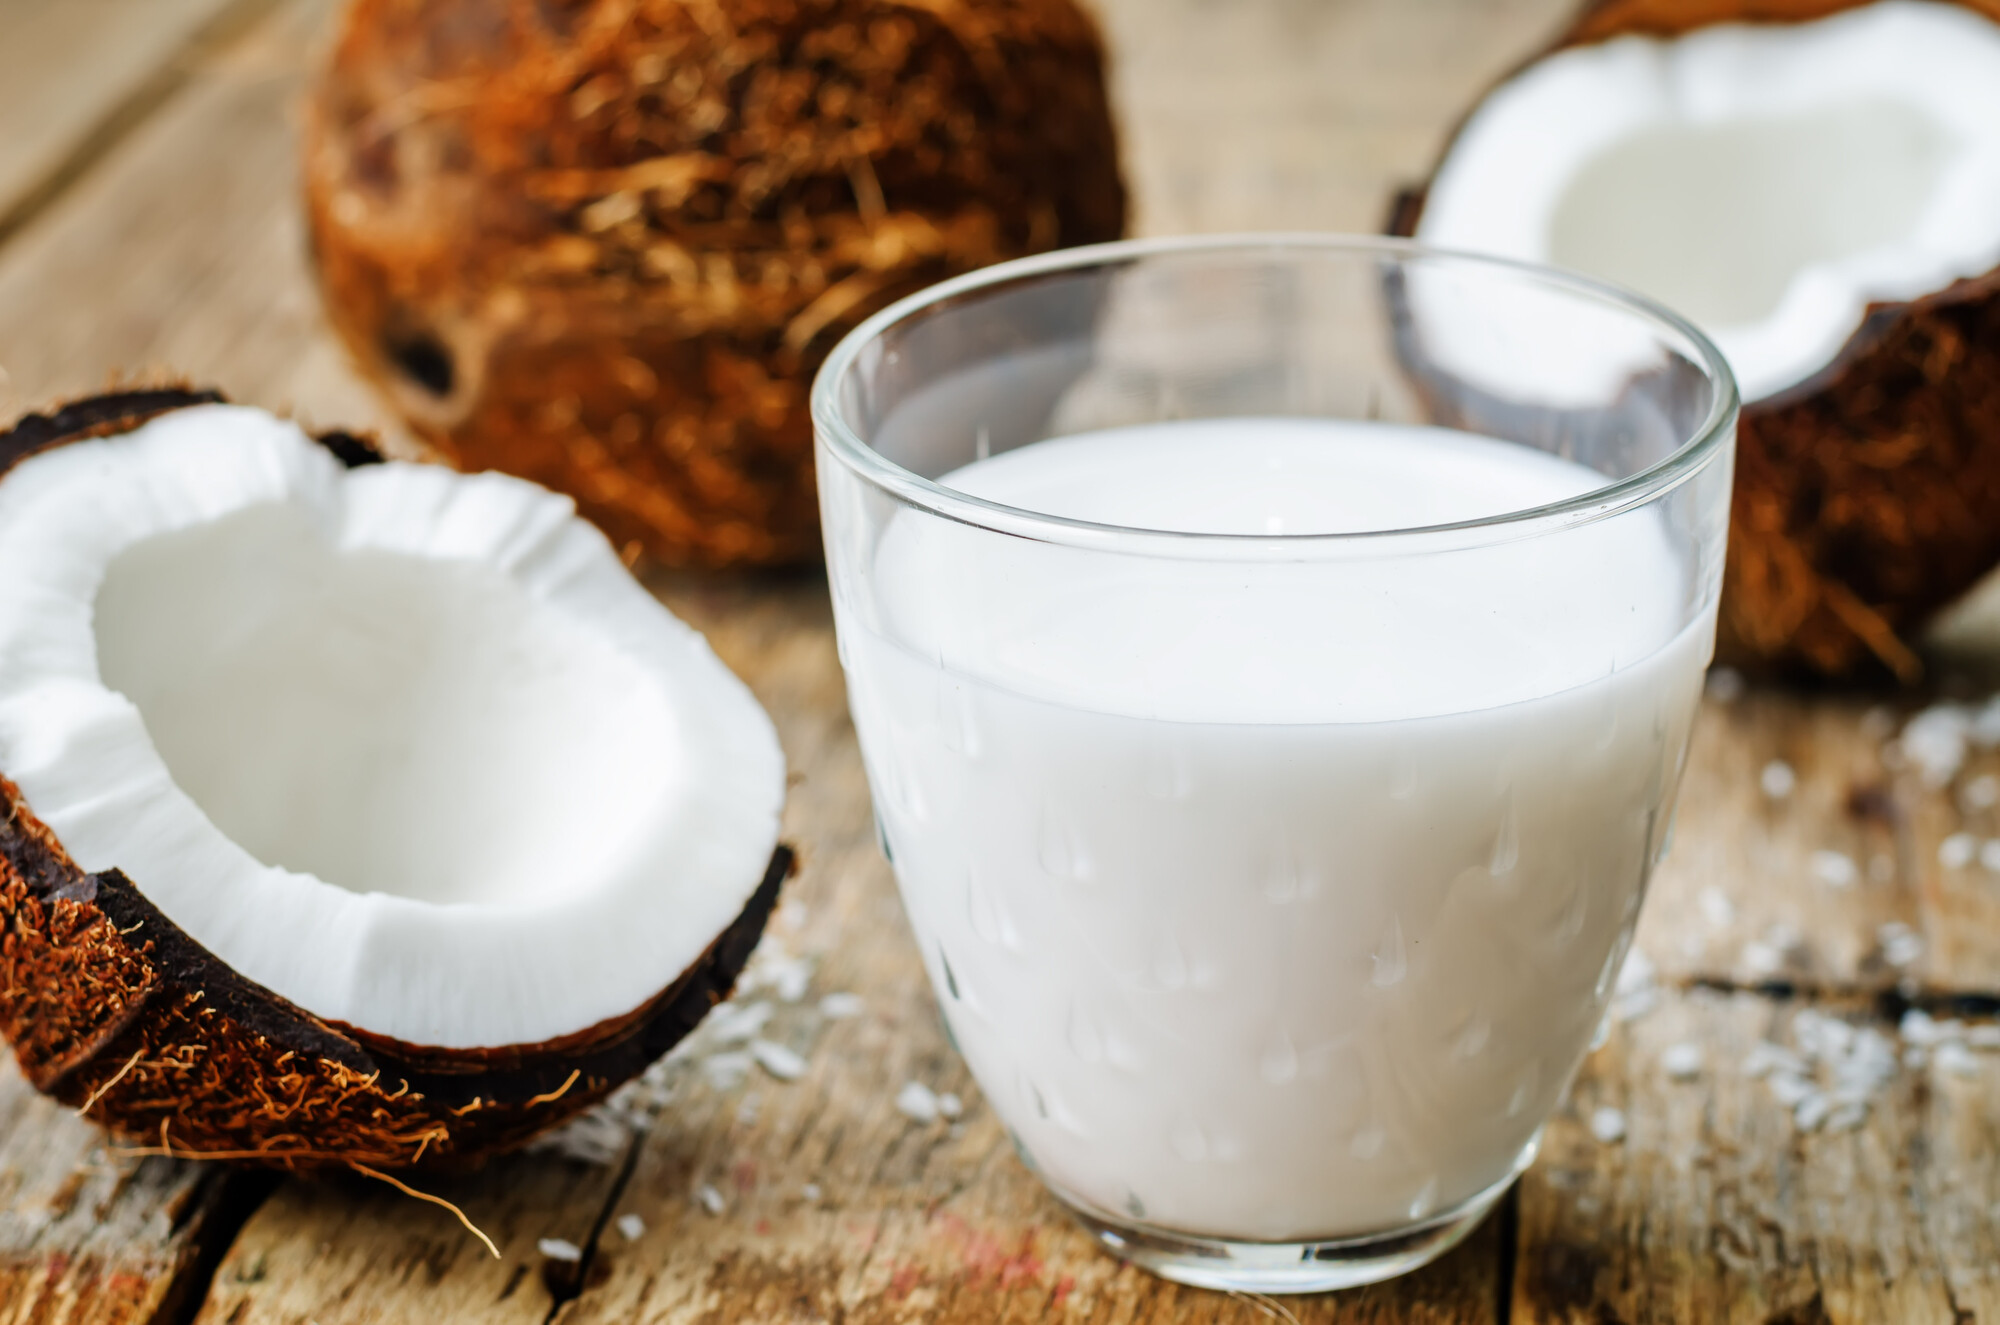 Кокосовое молоко из кокосовой стружки